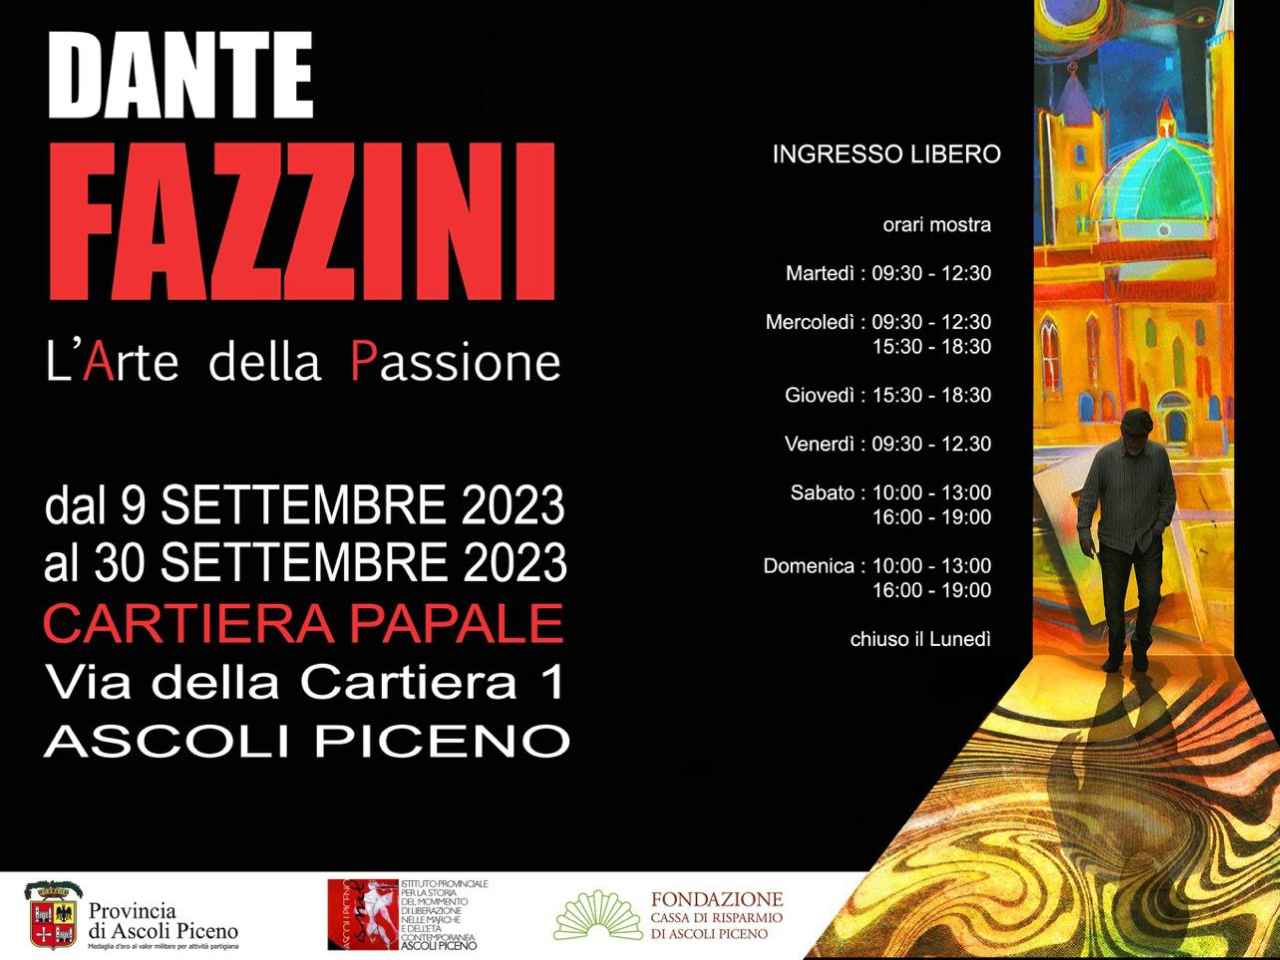 Dante Fazzini. L’arte della passione